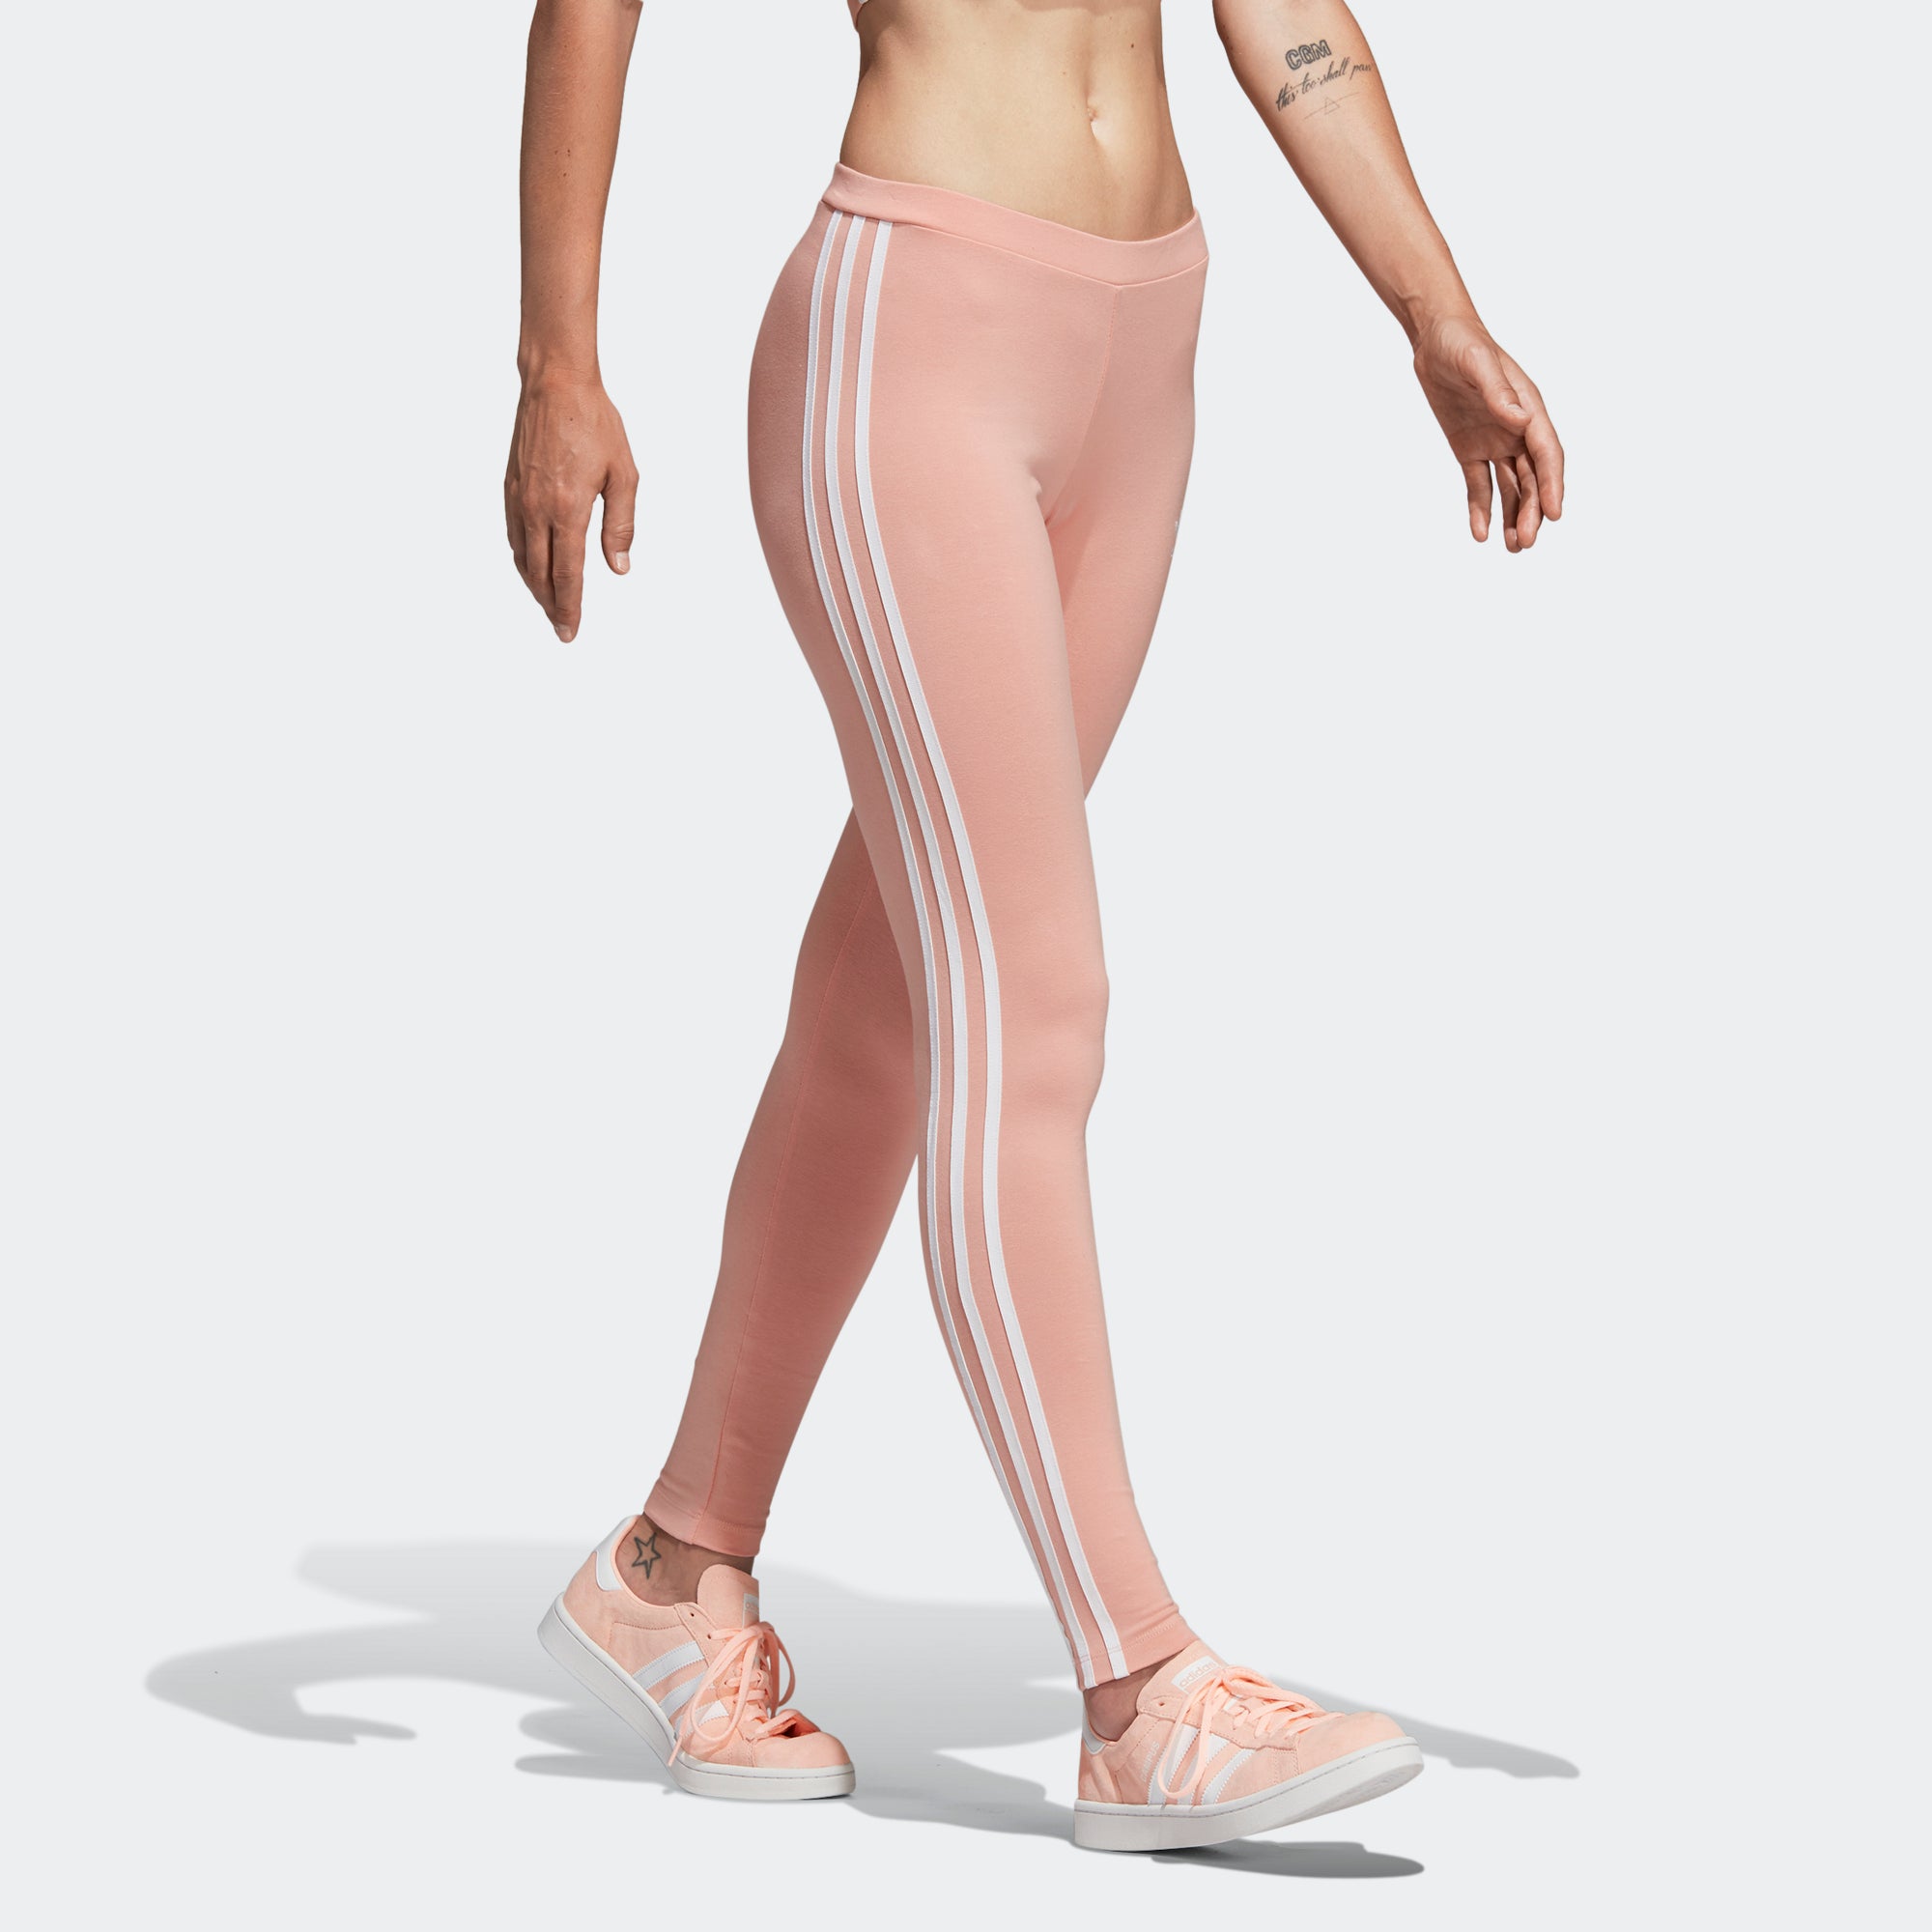 pink addidas leggings